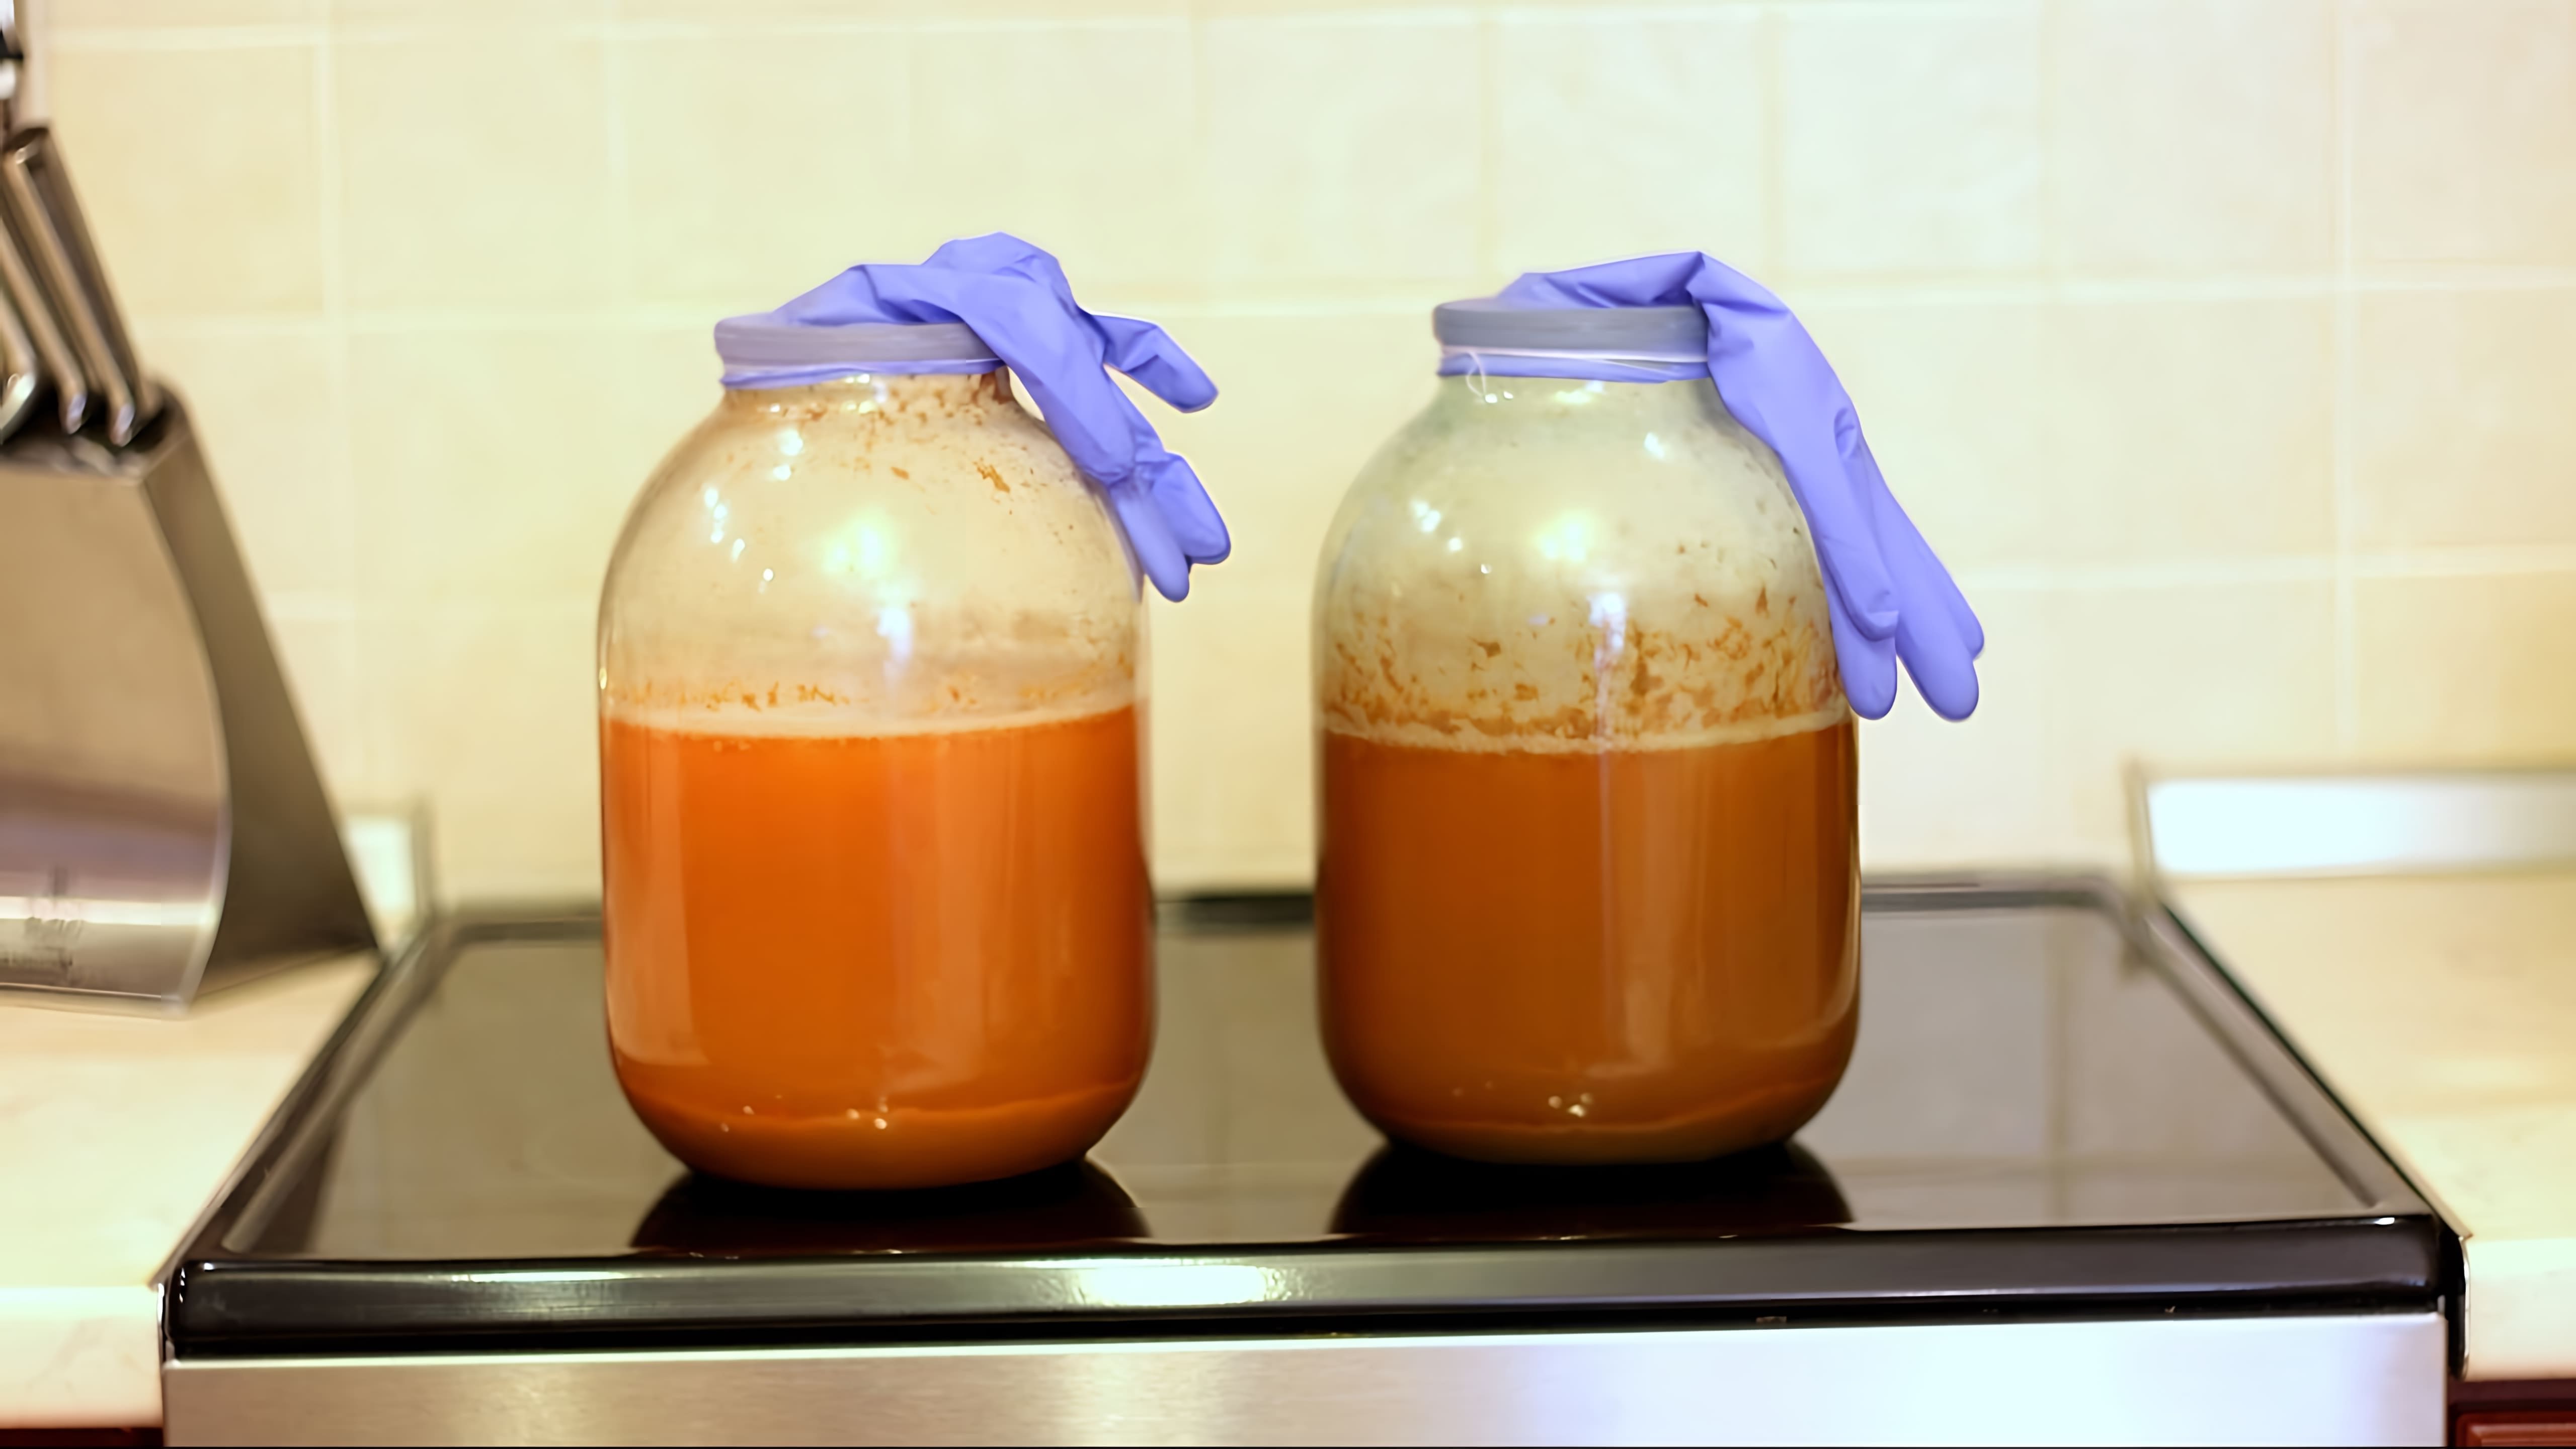 В этом видео демонстрируется процесс приготовления слабоалкогольного яблочного напитка - сидра